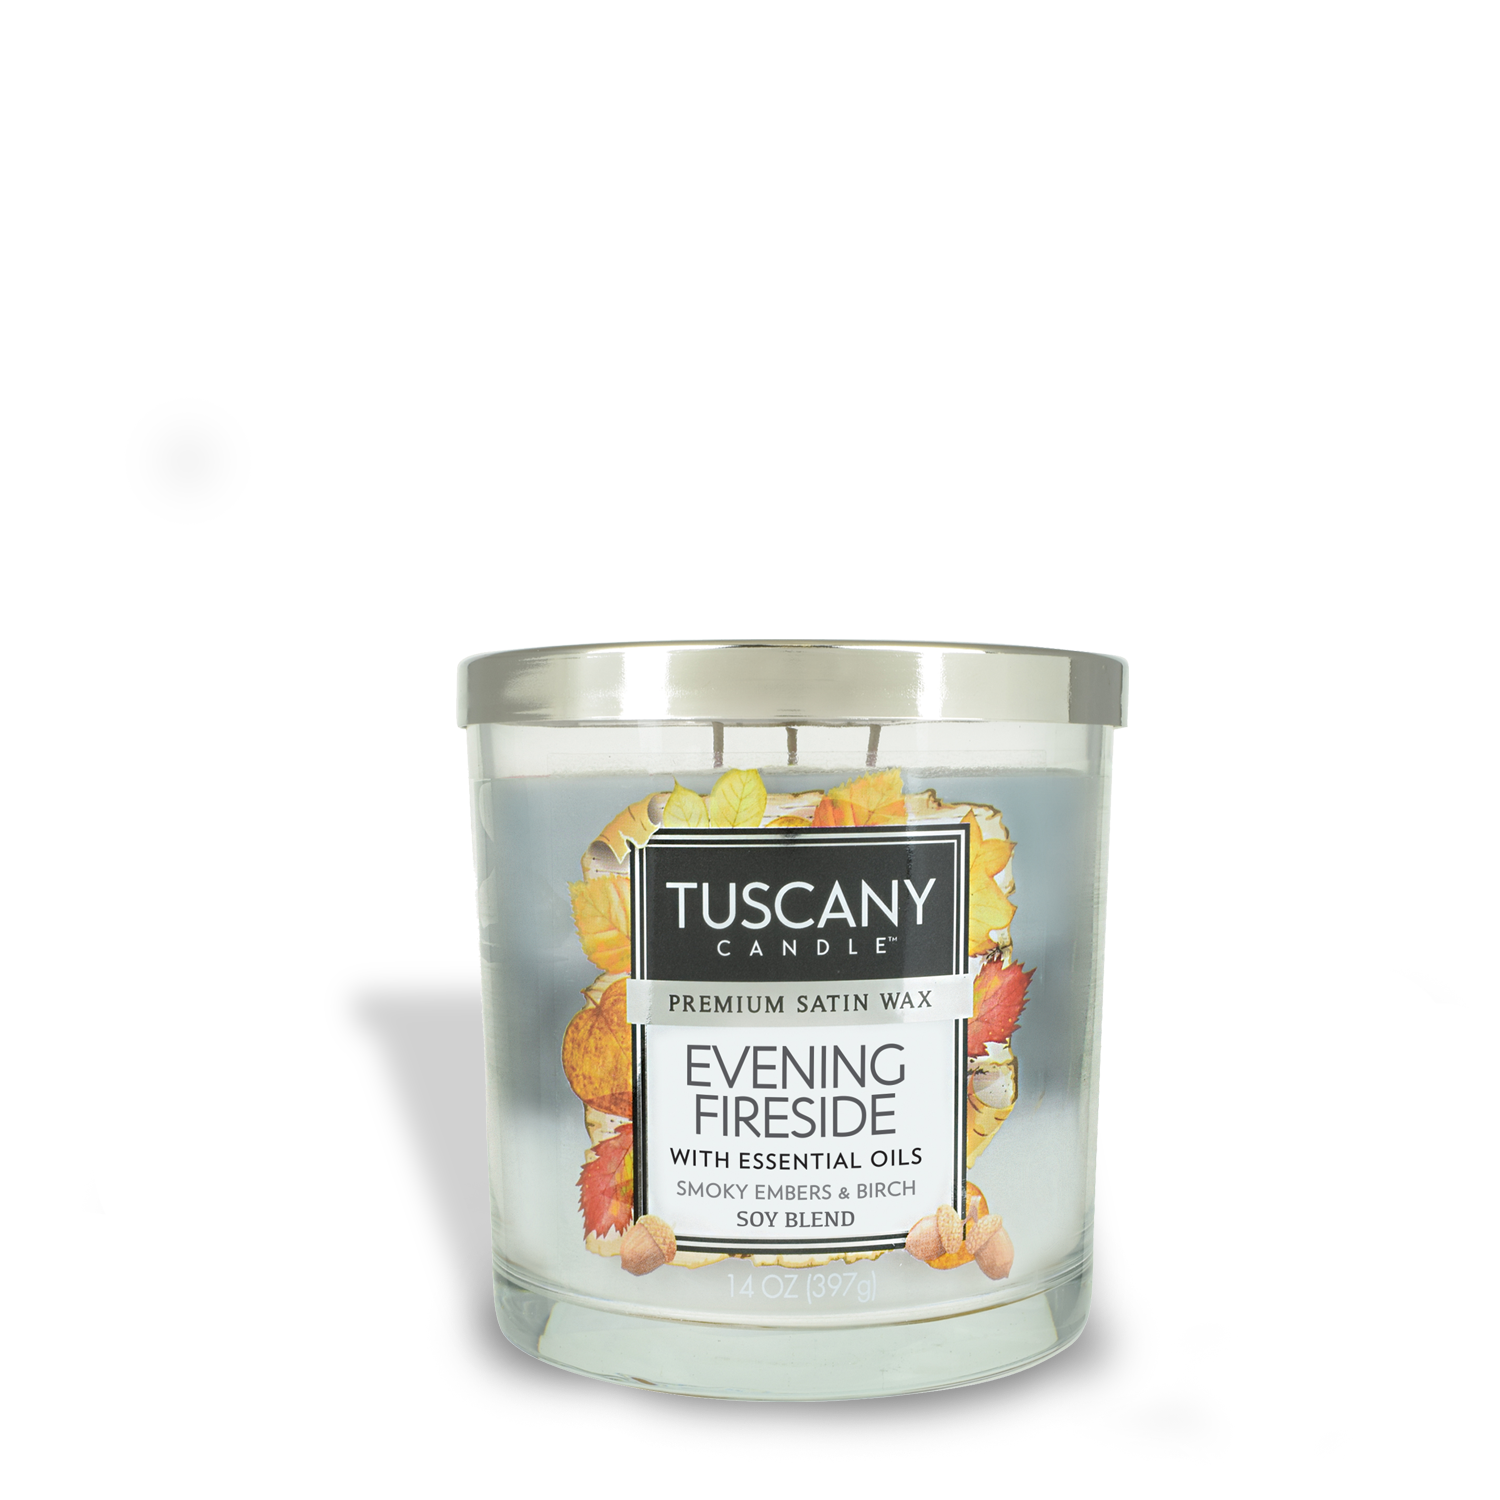 Tuscany Candle Candle, Cafe Au Lait - 1 candle, 14 oz